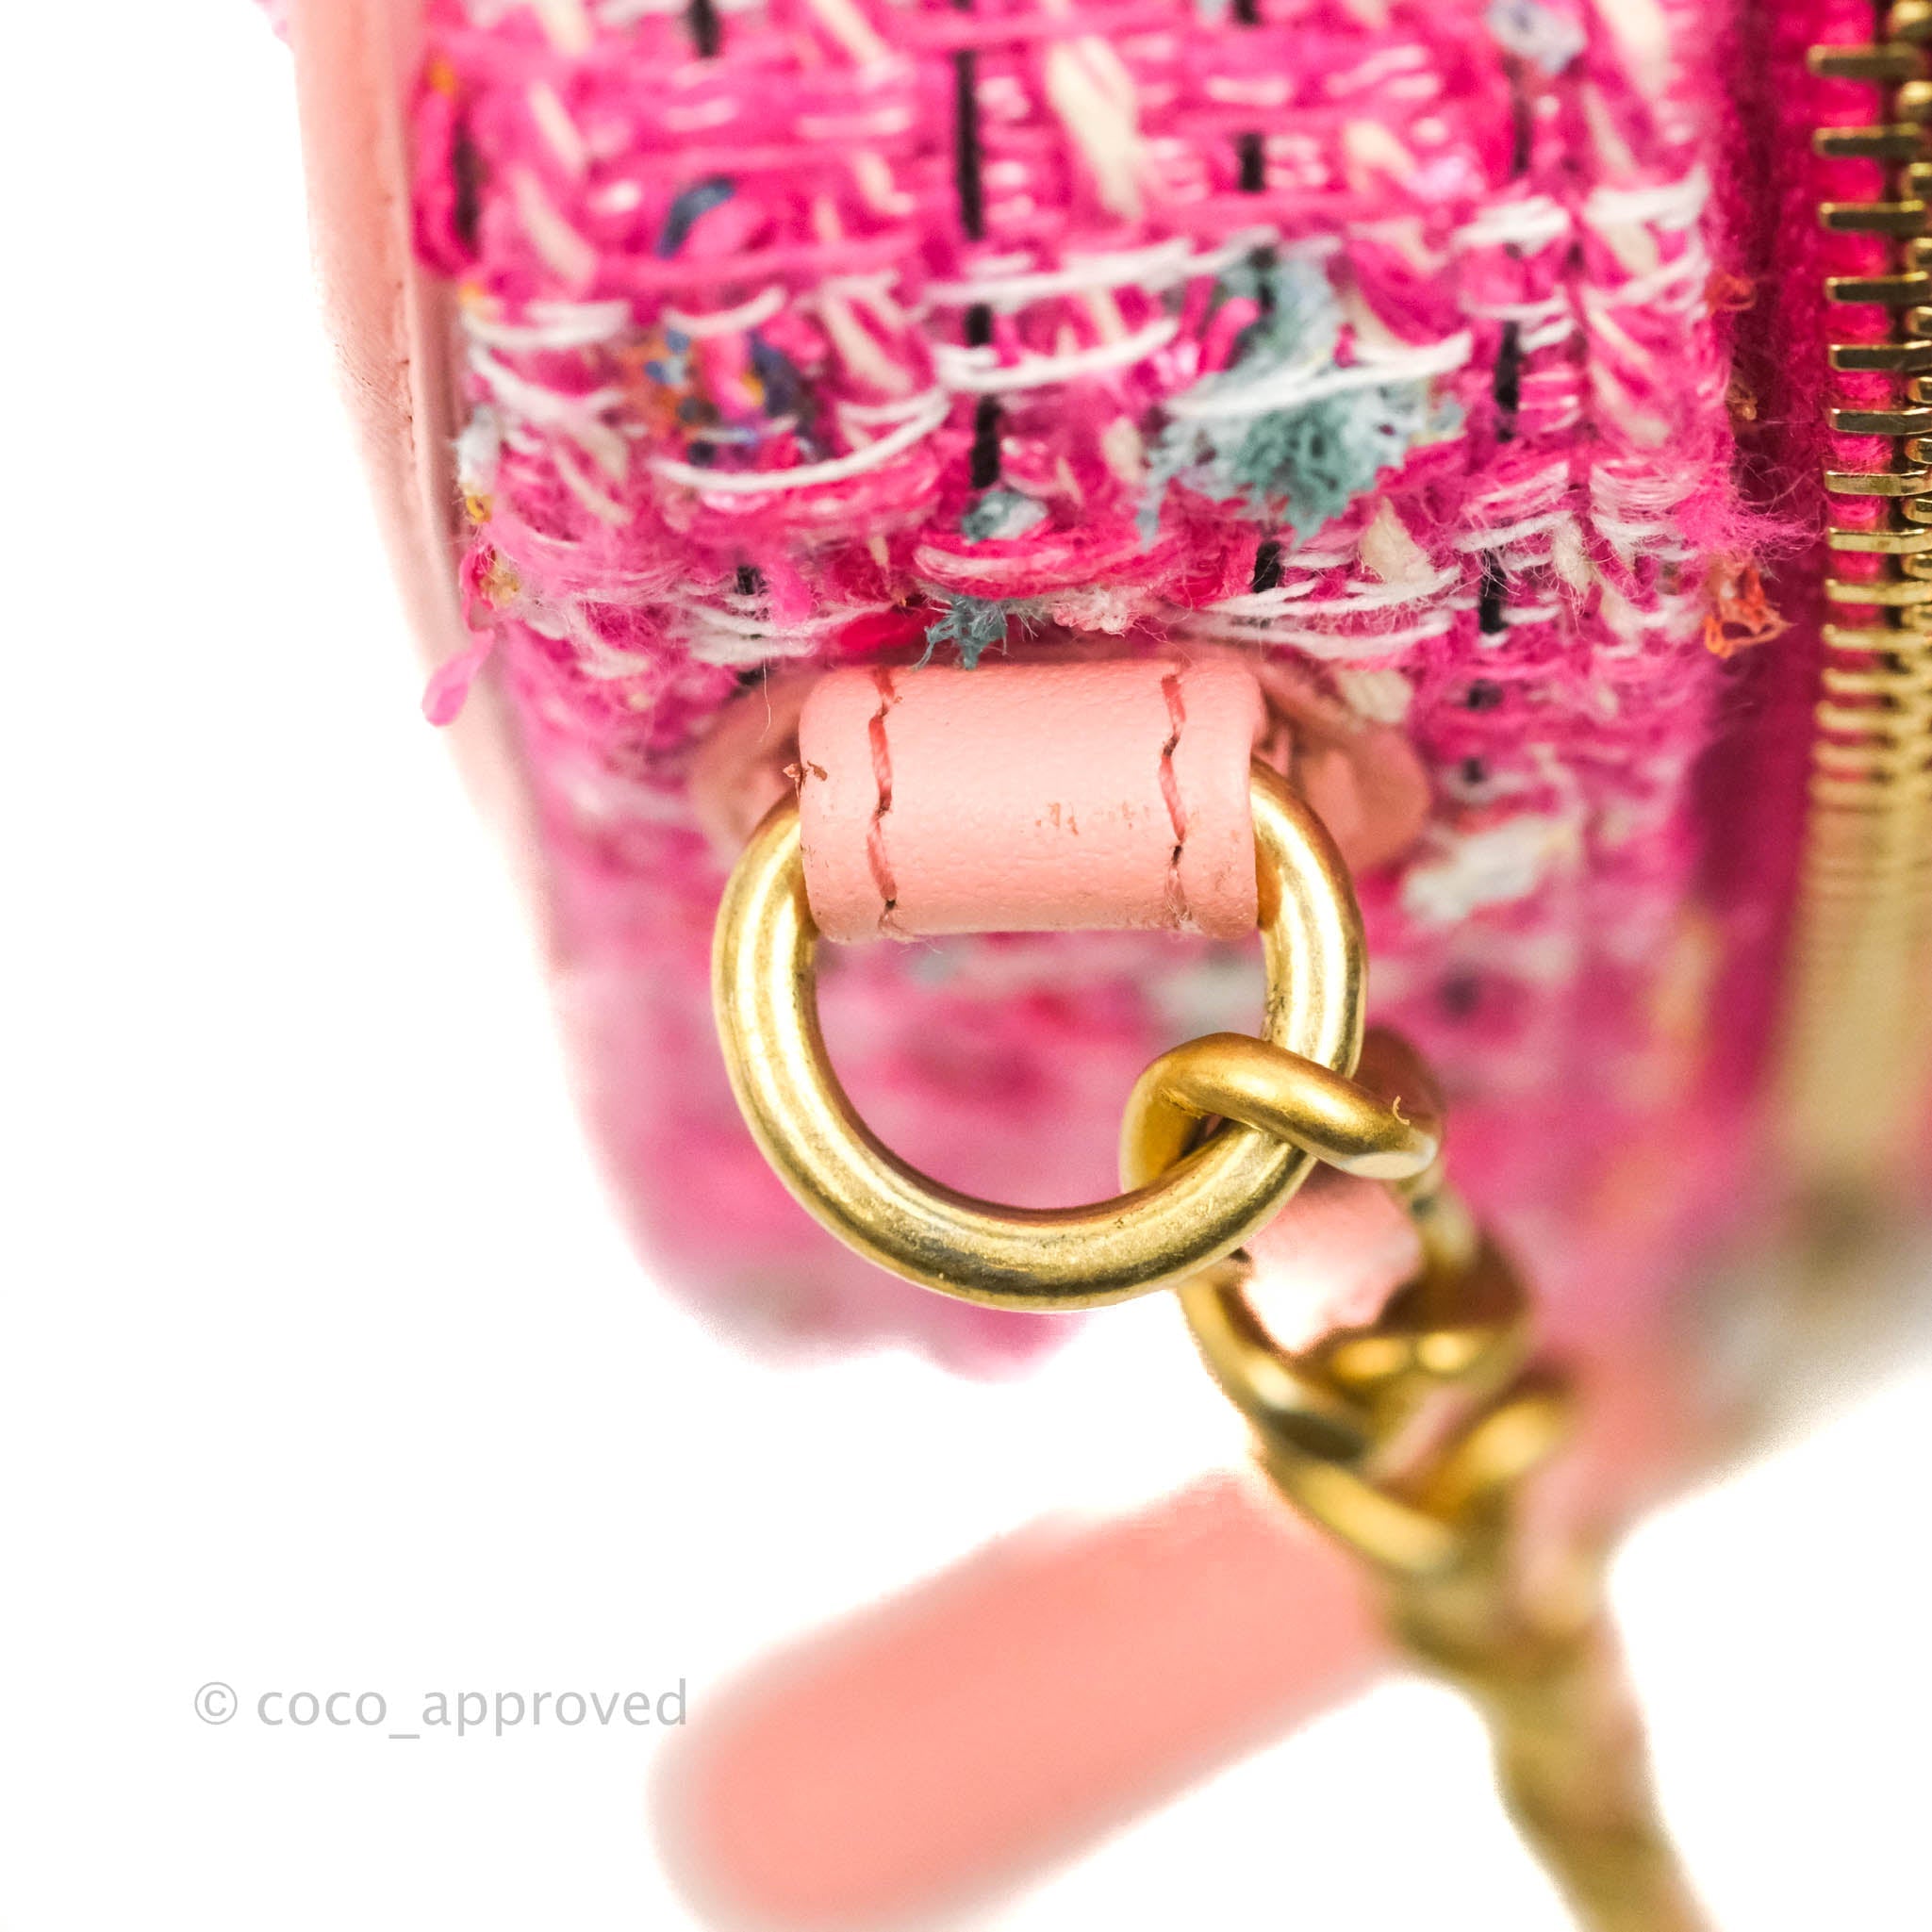 Cc filigree handbag Chanel Multicolour in Plastic - 36150111